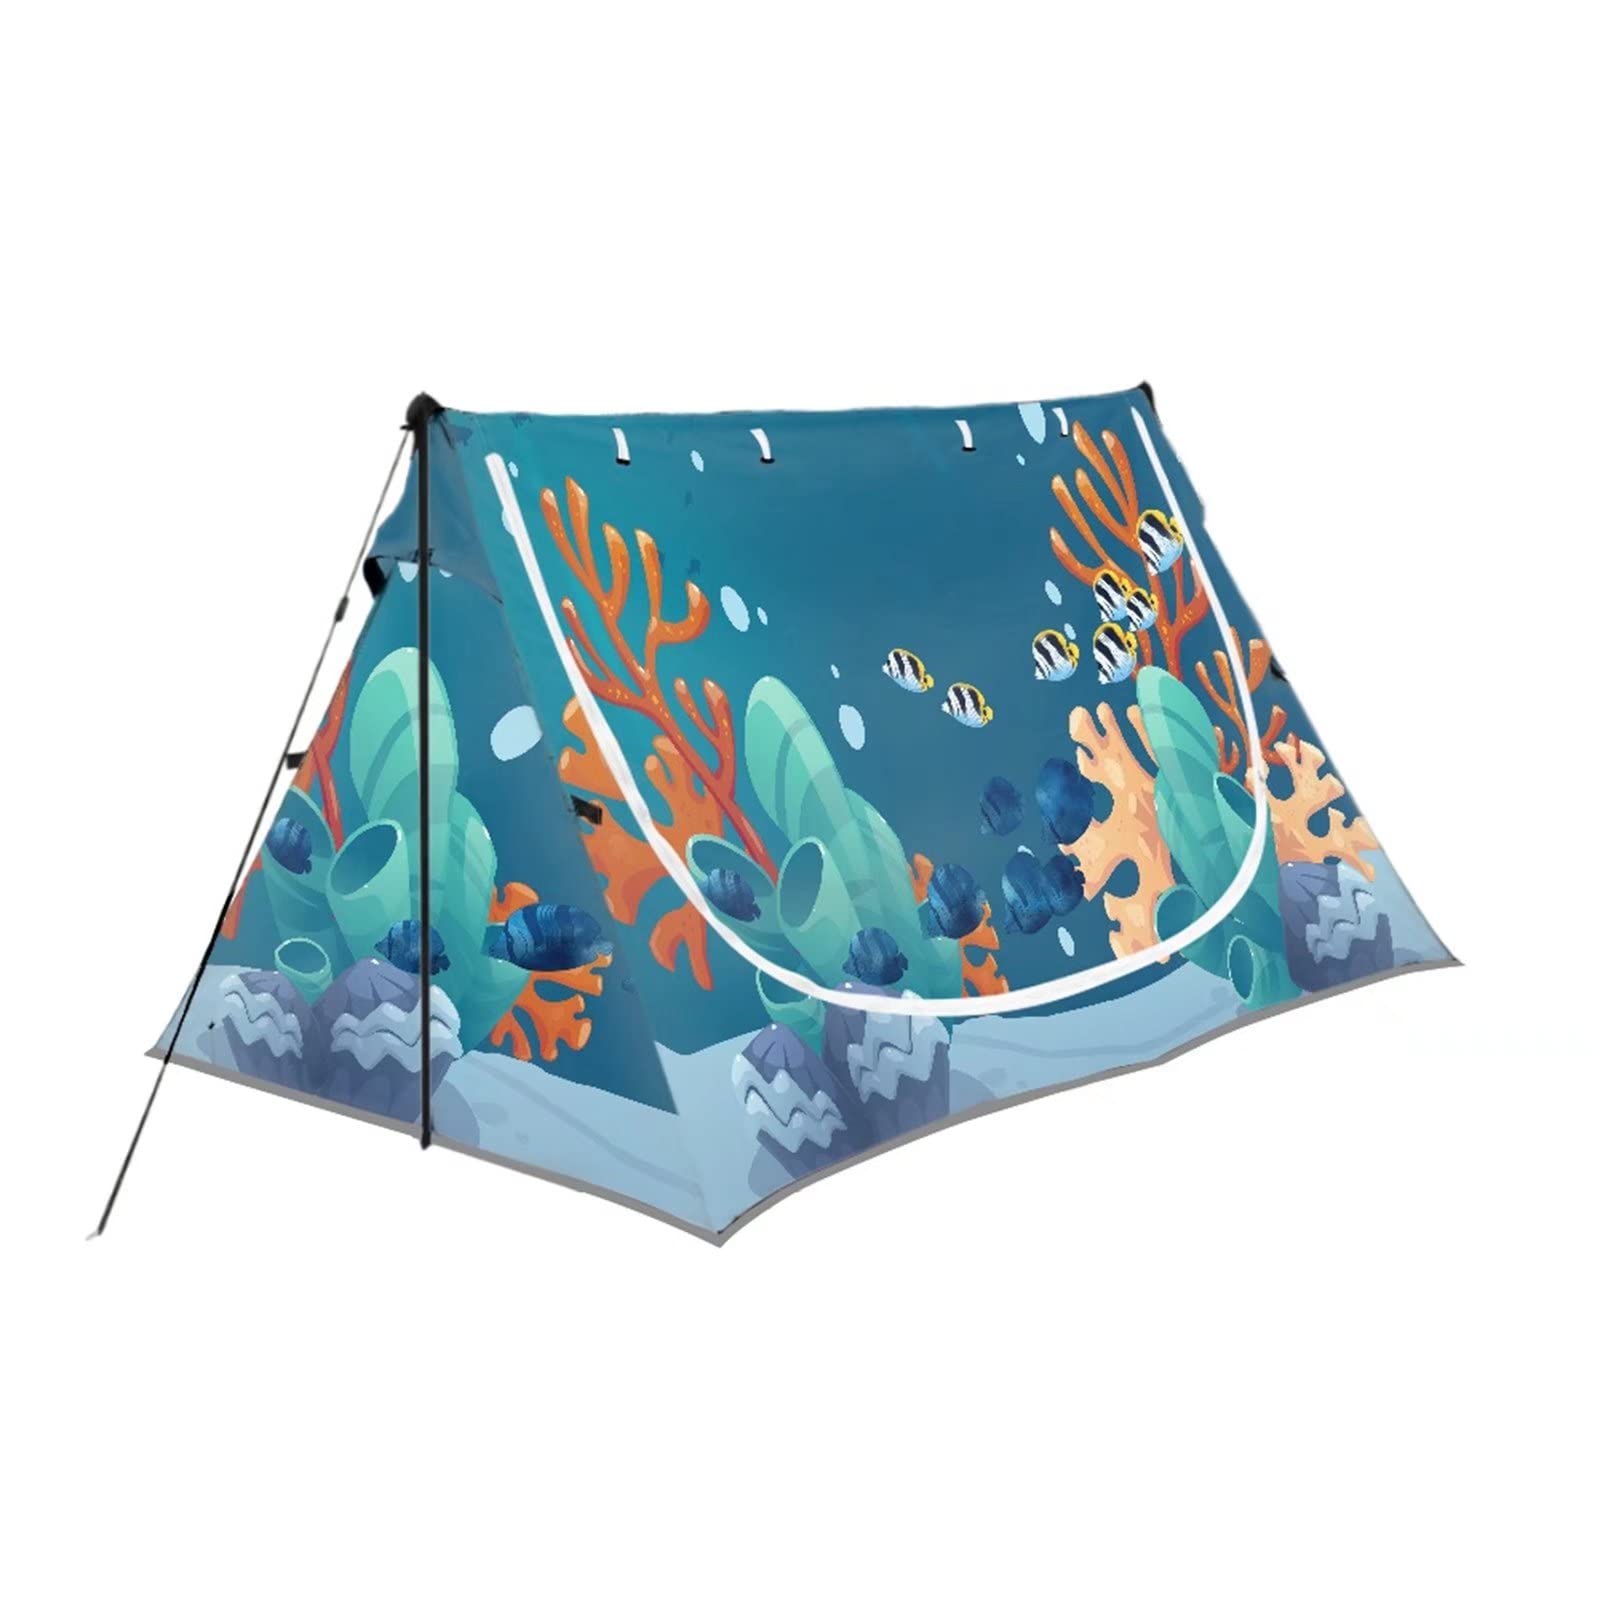 送料無料Freewander Cartoon Style Print Tent for Children and Teenagers 1-2 People Outdoor Camping Tent Leisure Foldable